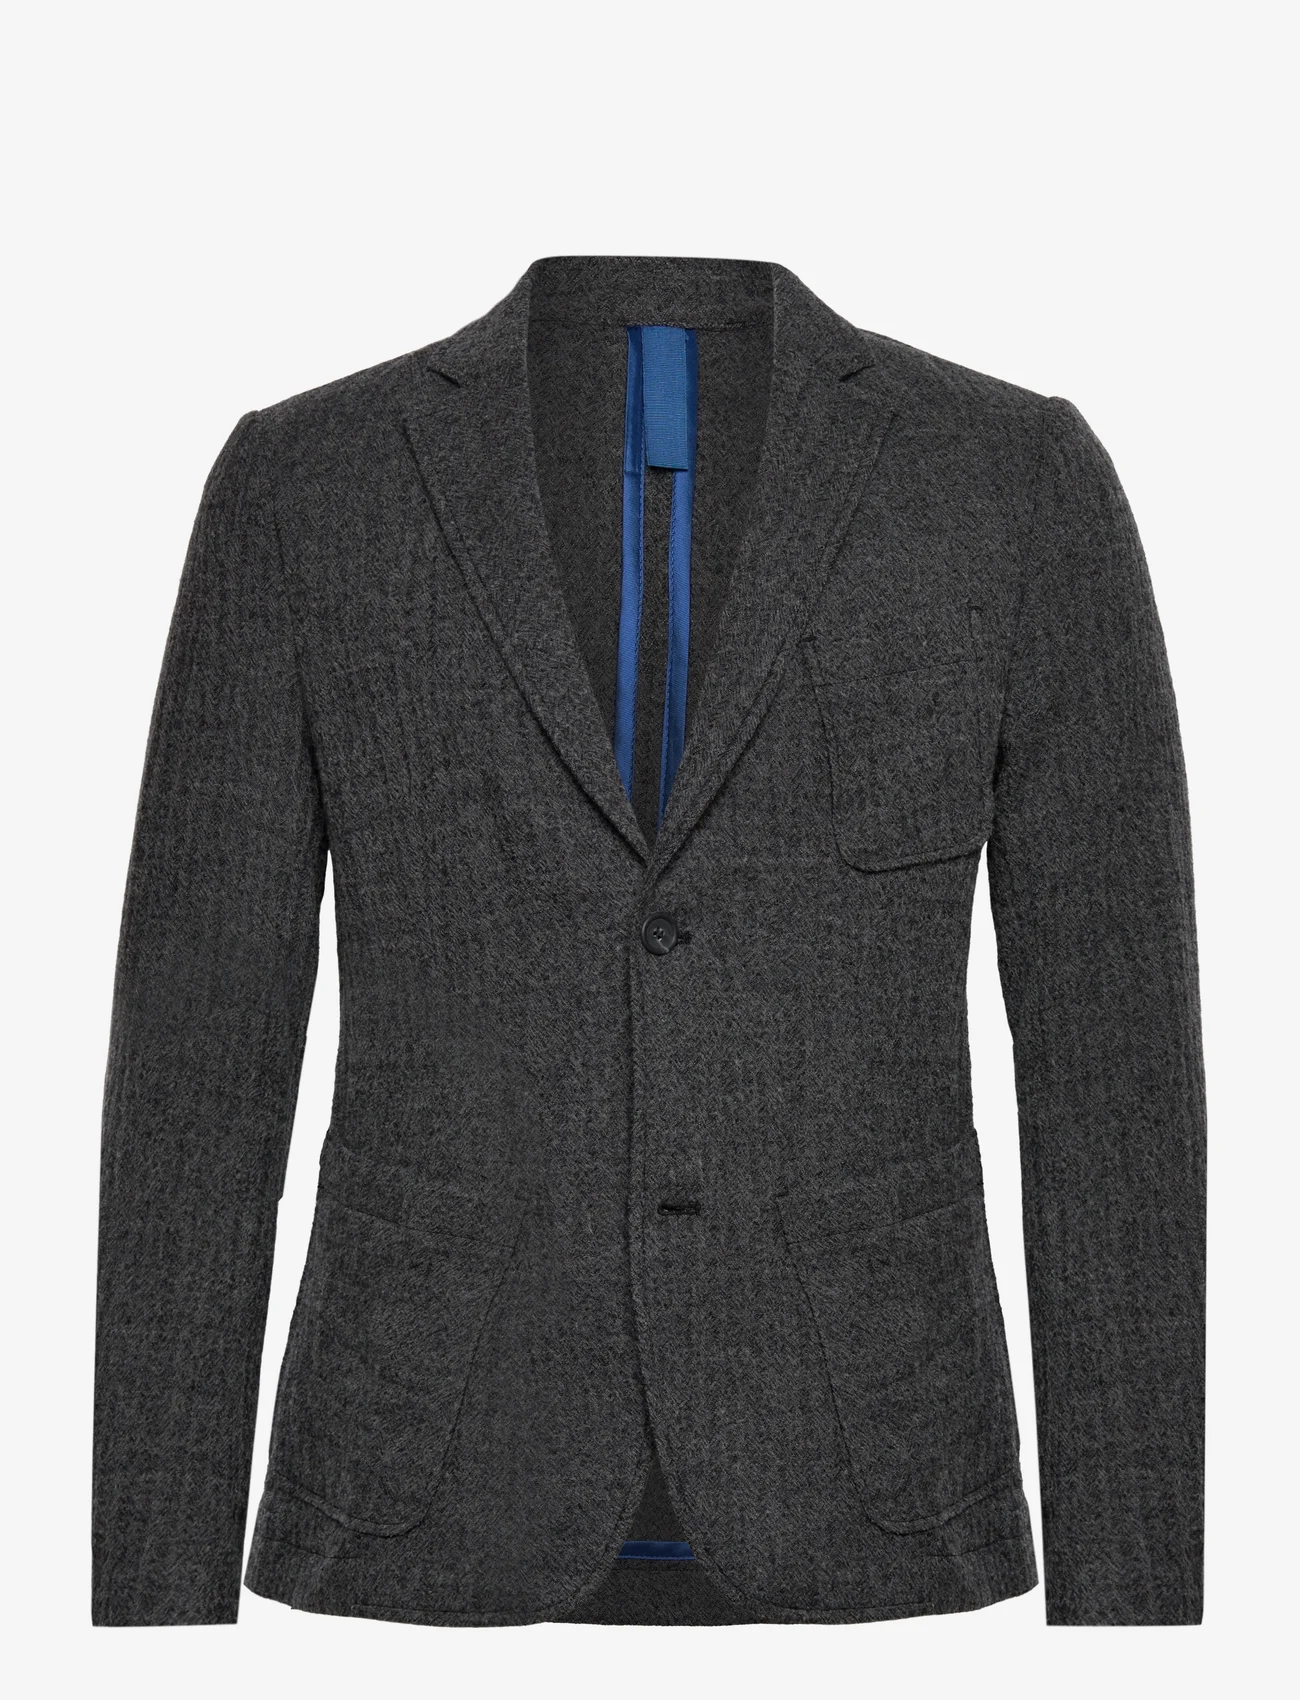 FRENN - Jere Wool Jacket - double breasted blazers - grey - 0